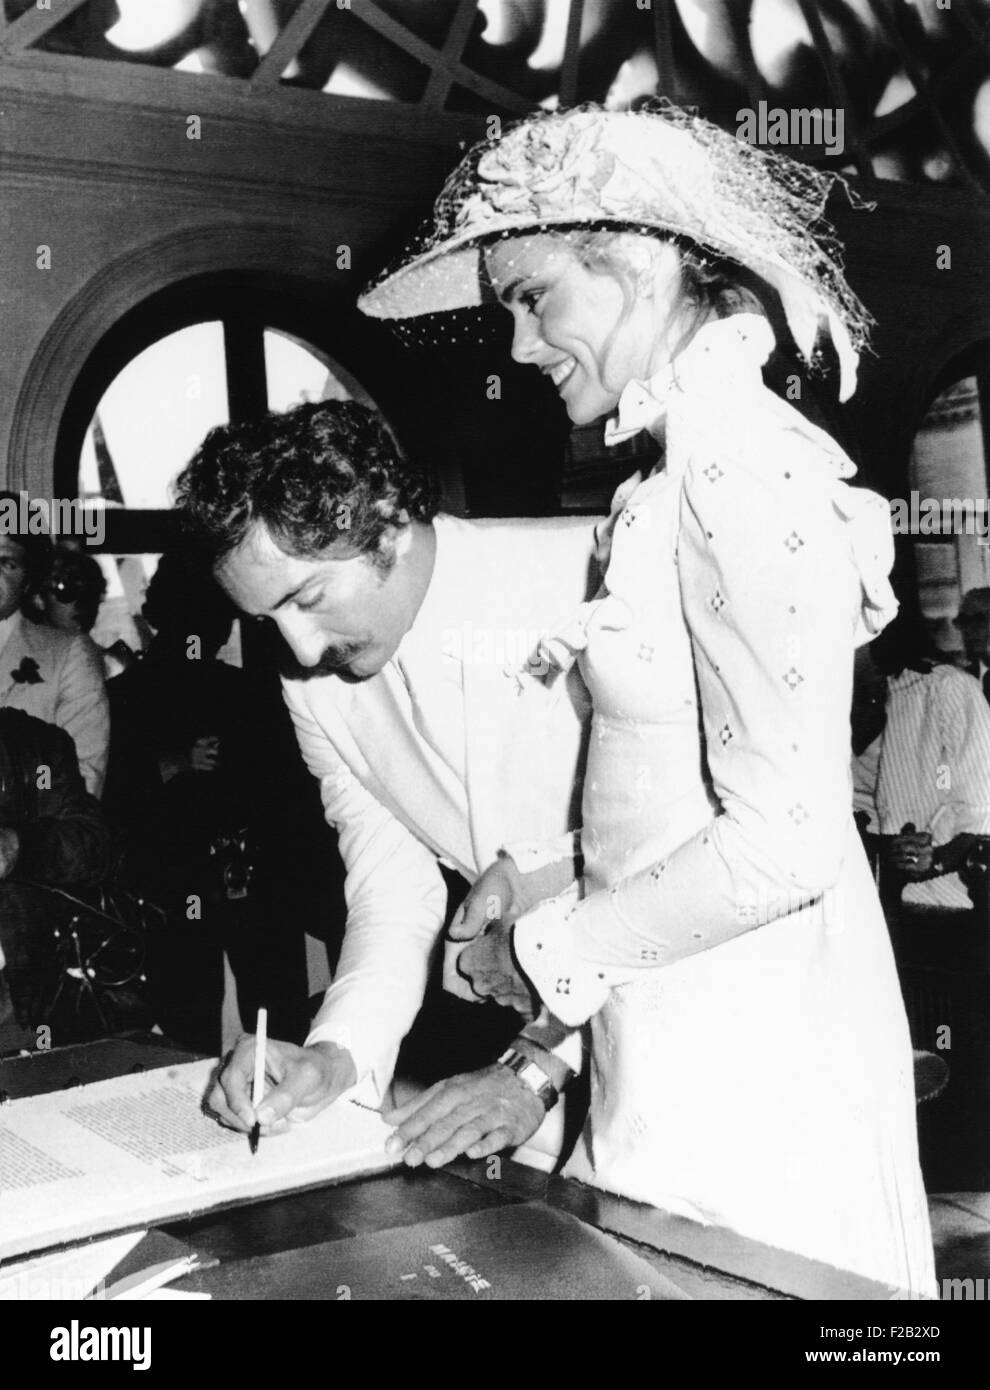 Nouvelle mariée Errol Whitson, signe le registre de mariage modèle après avoir épousé Margot Hemingway. Ils se sont mariés, à l'édifice municipal du premier arrondissement de Paris. Ils ont divorcé en 1978. CSU (2015  7 308) Banque D'Images